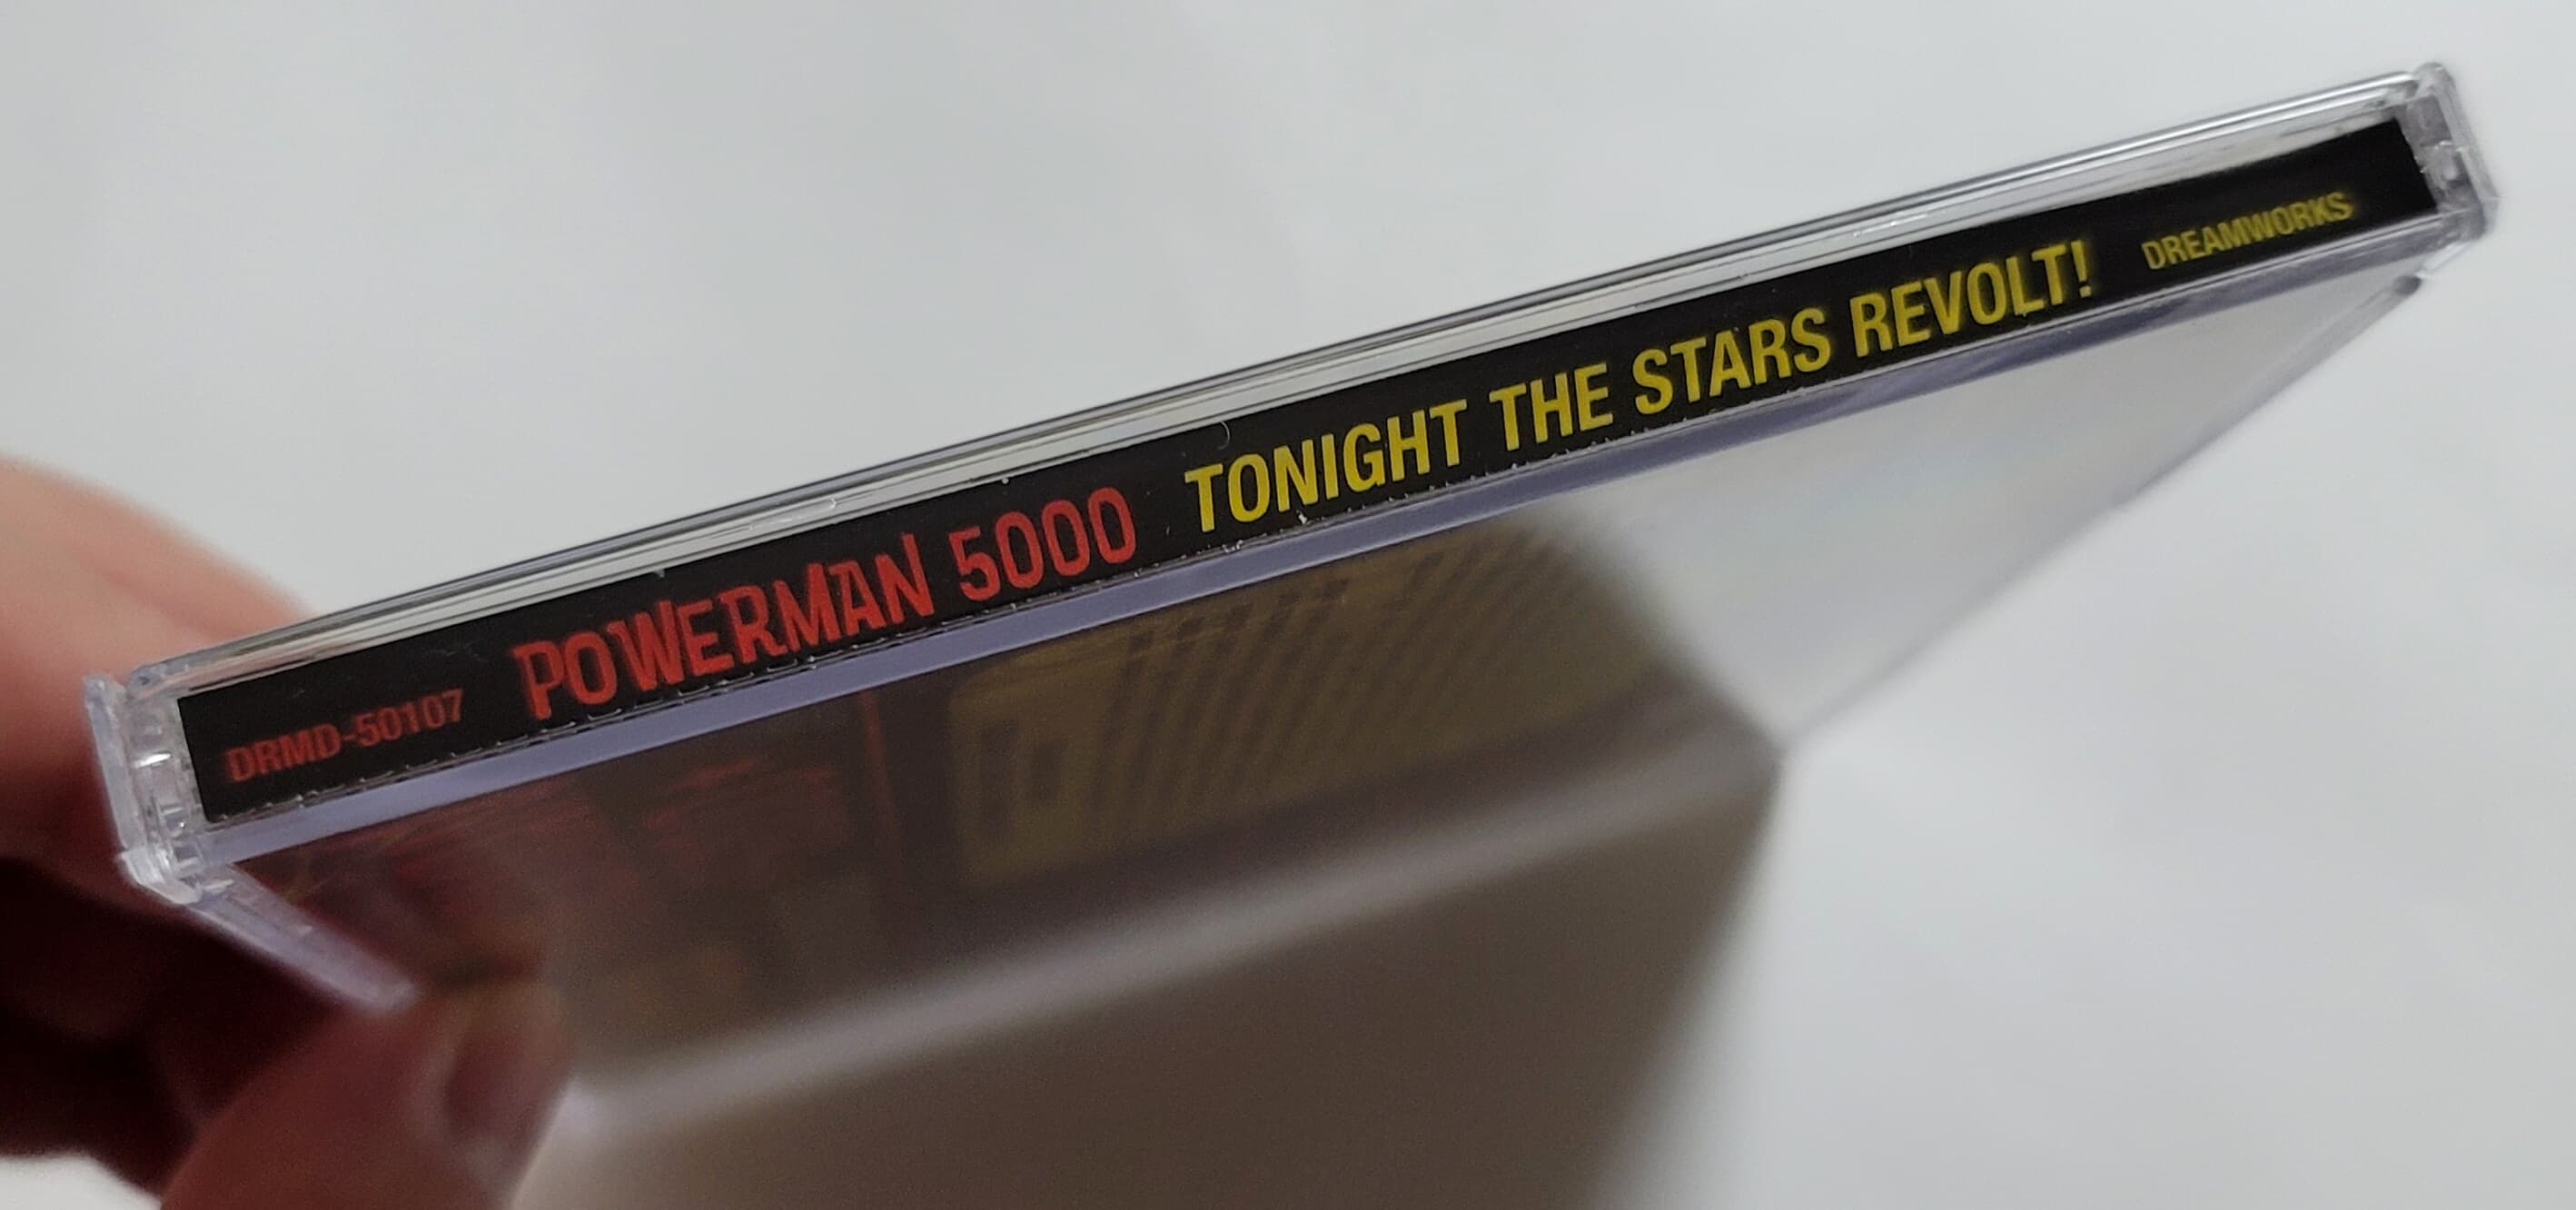 (미국반) Powerman 5000 - Tonight The Stars Revolt!